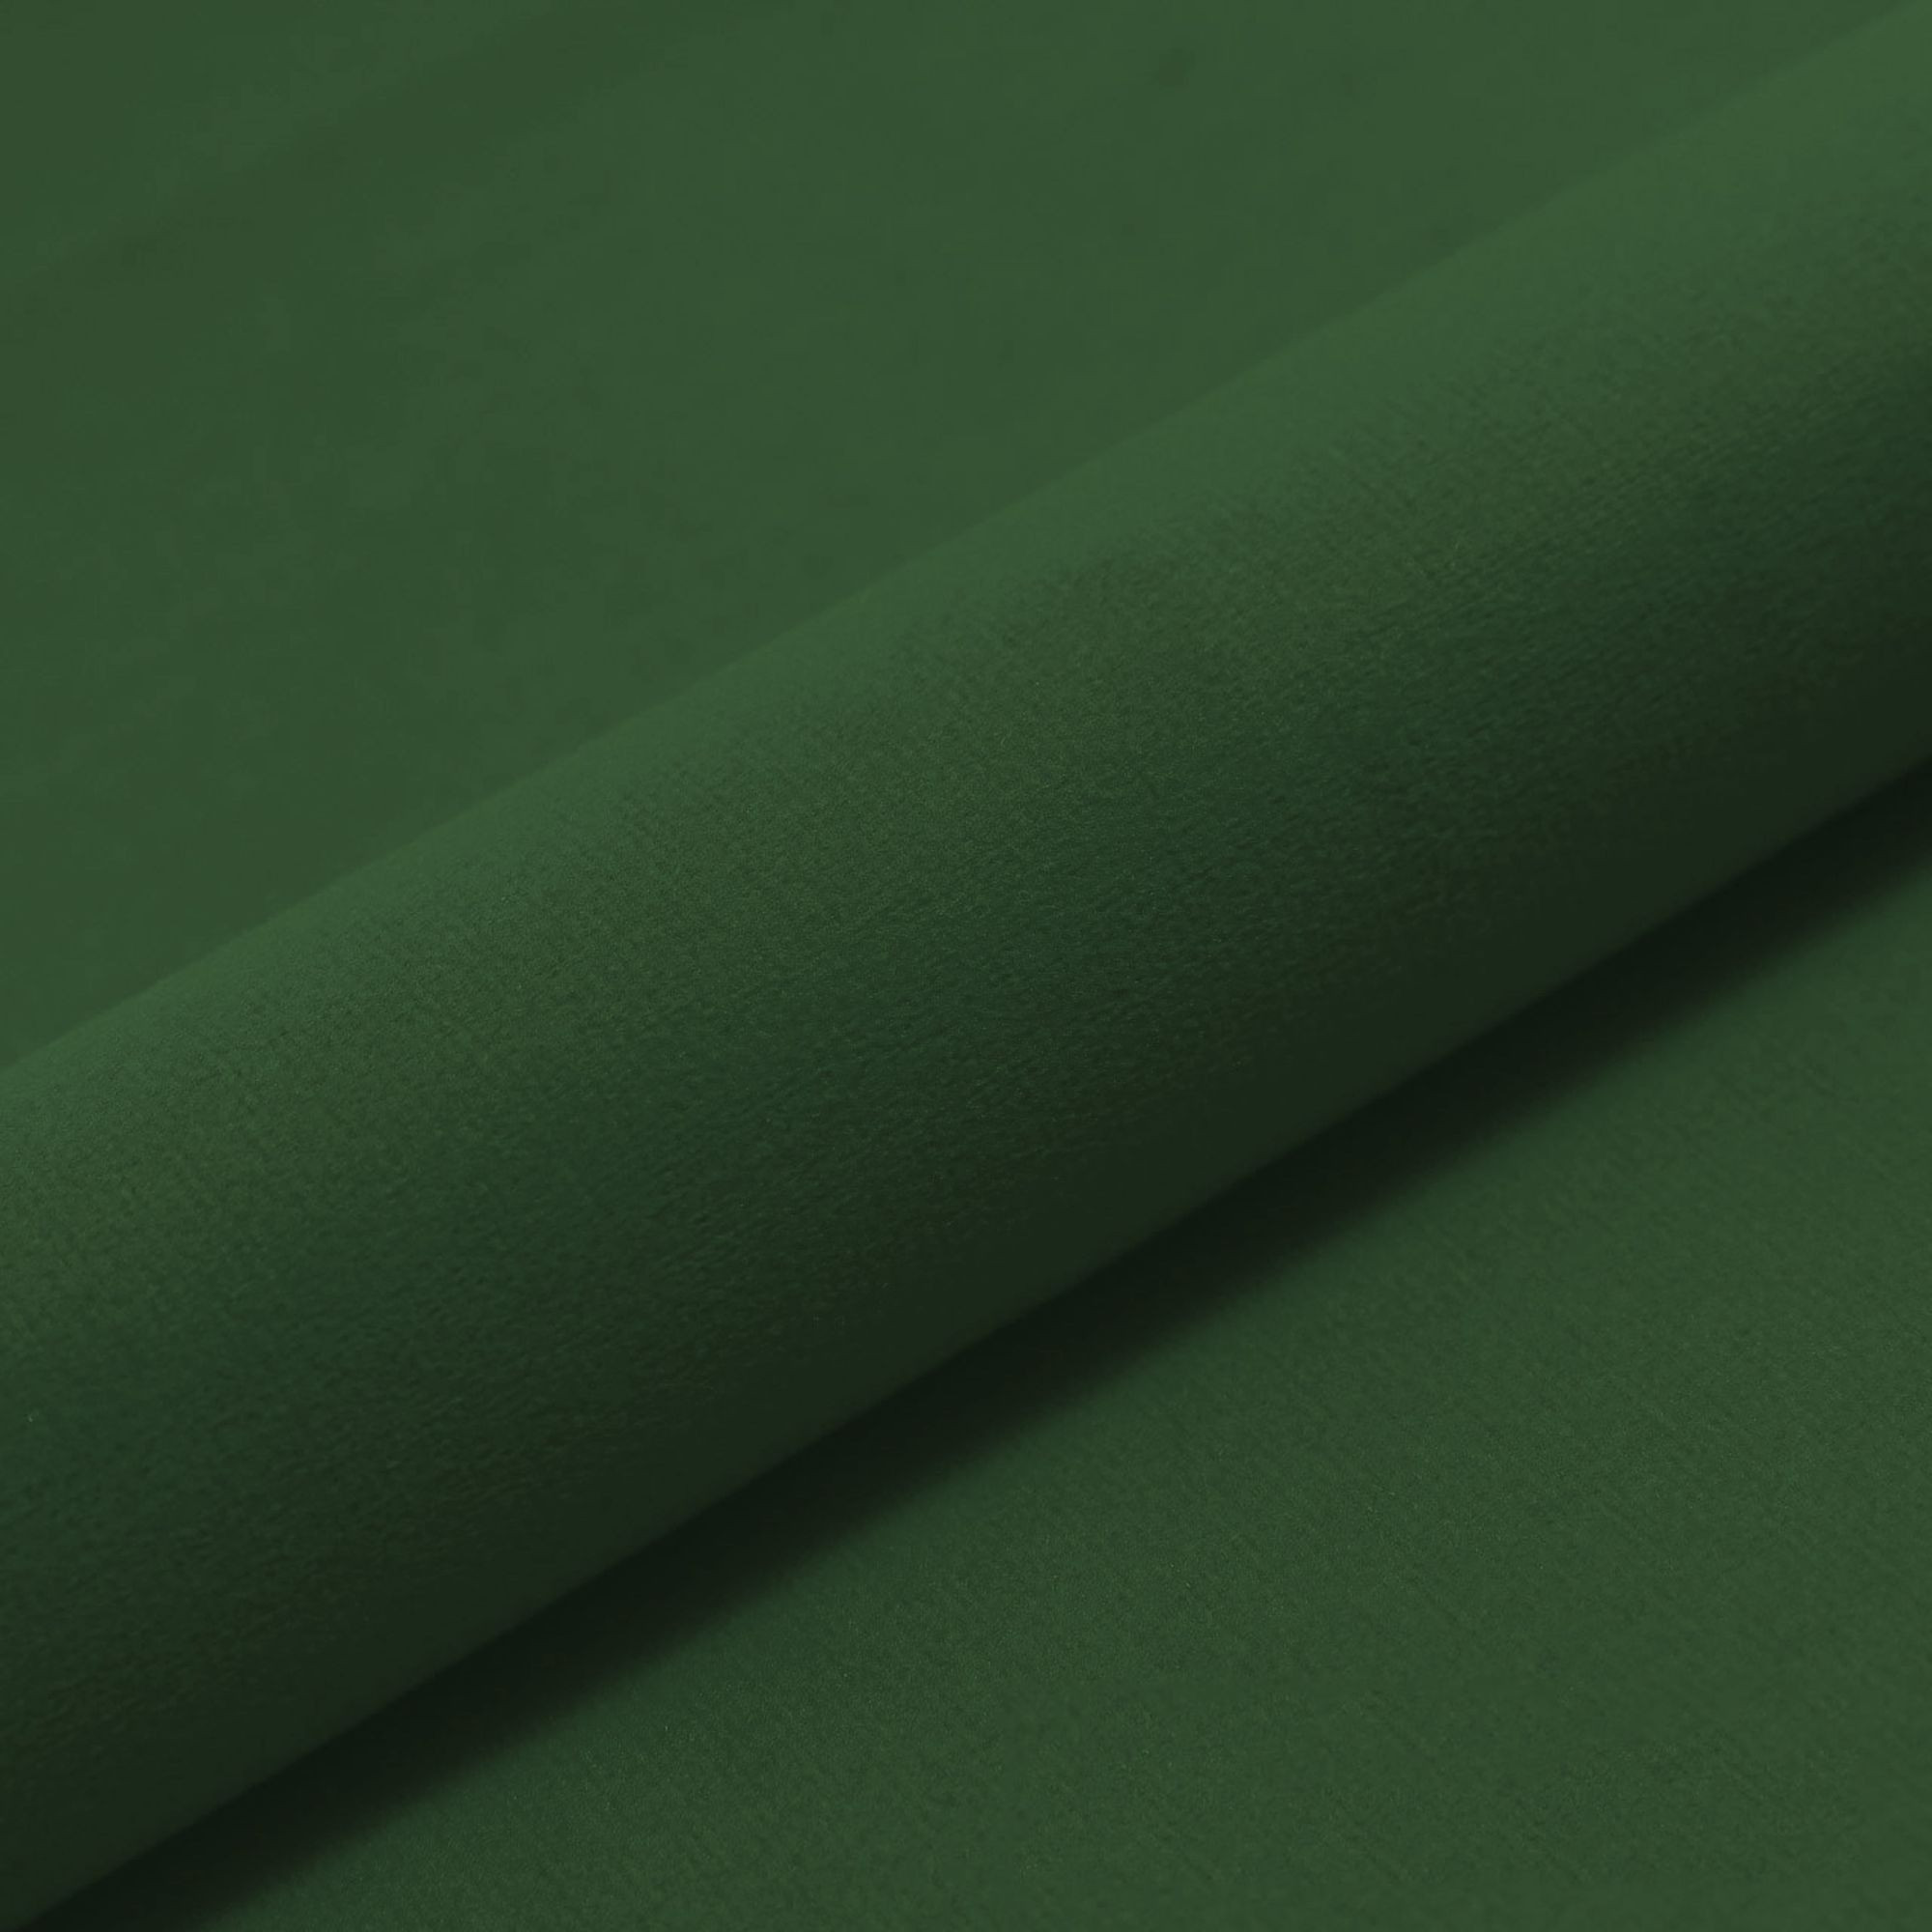 Čtvercový polštář tmavě zelený